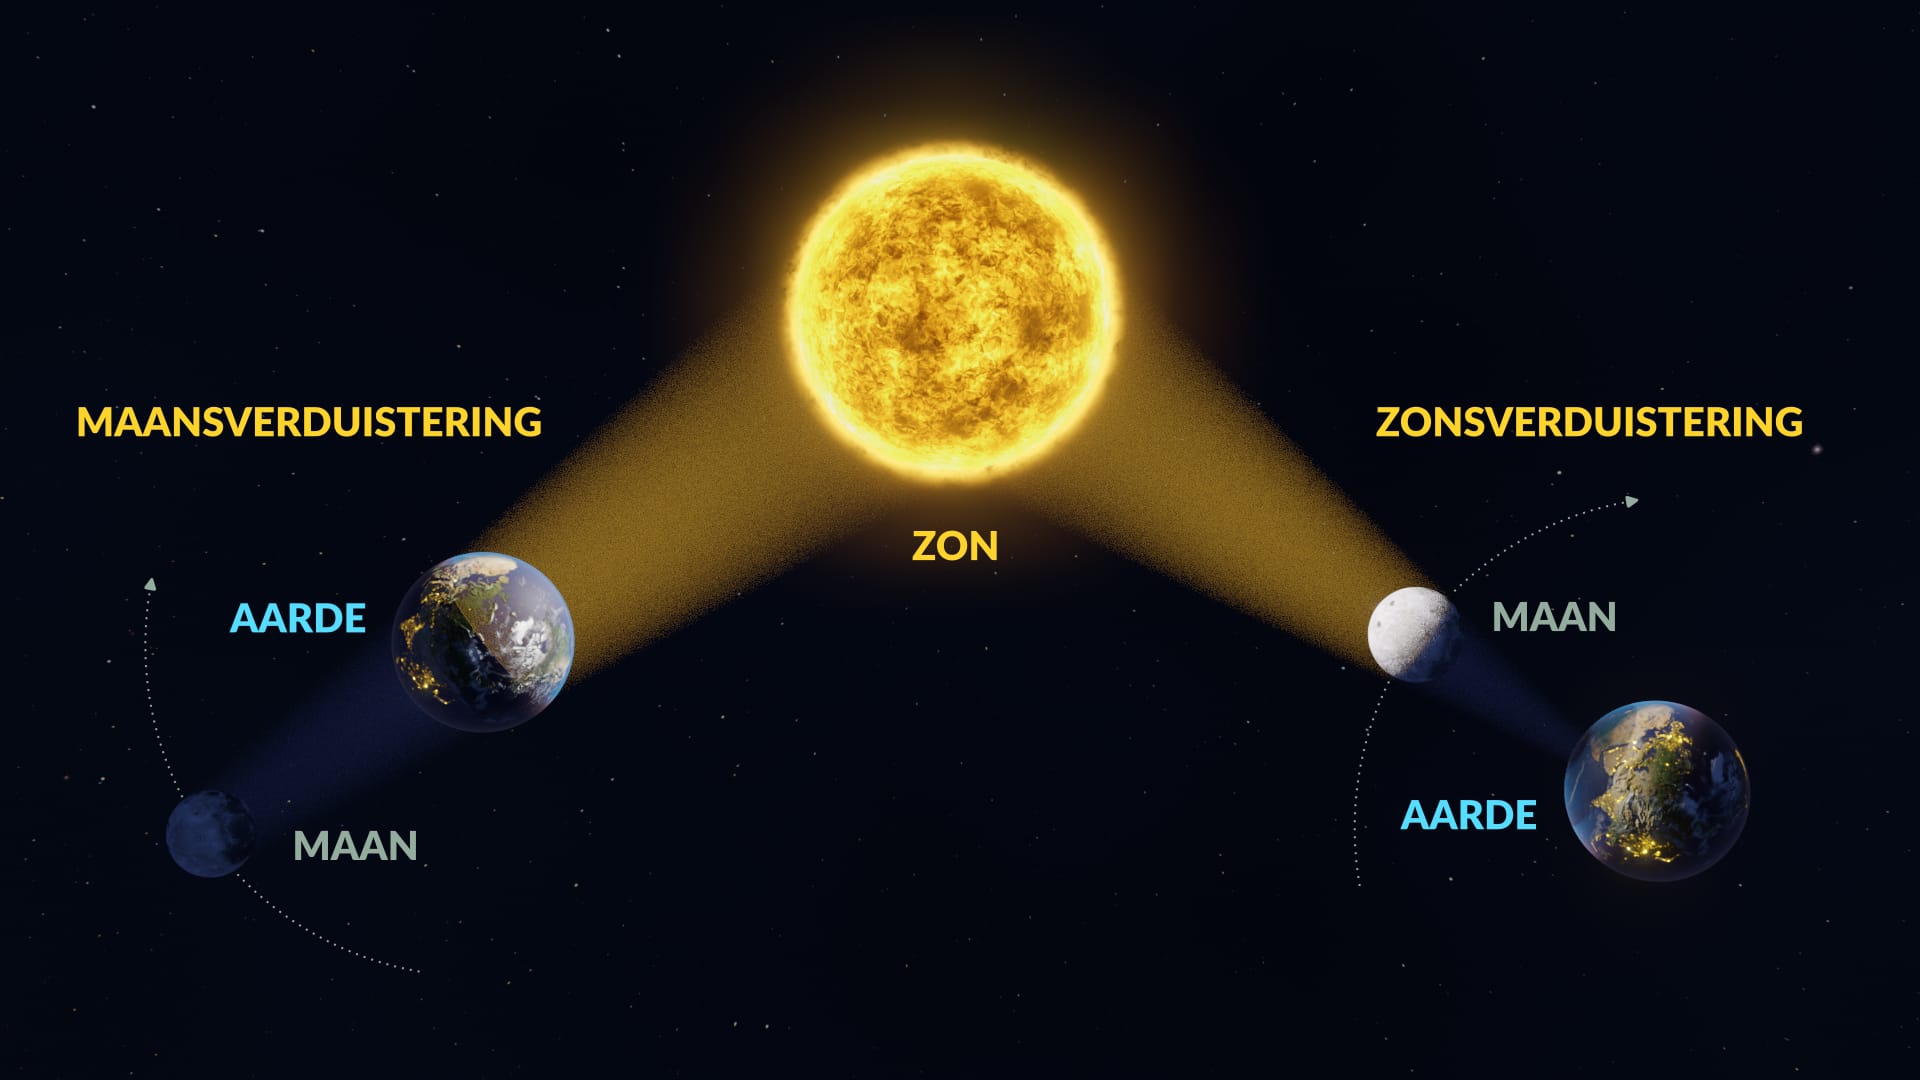 Maansverduistering vs. zonsverduistering